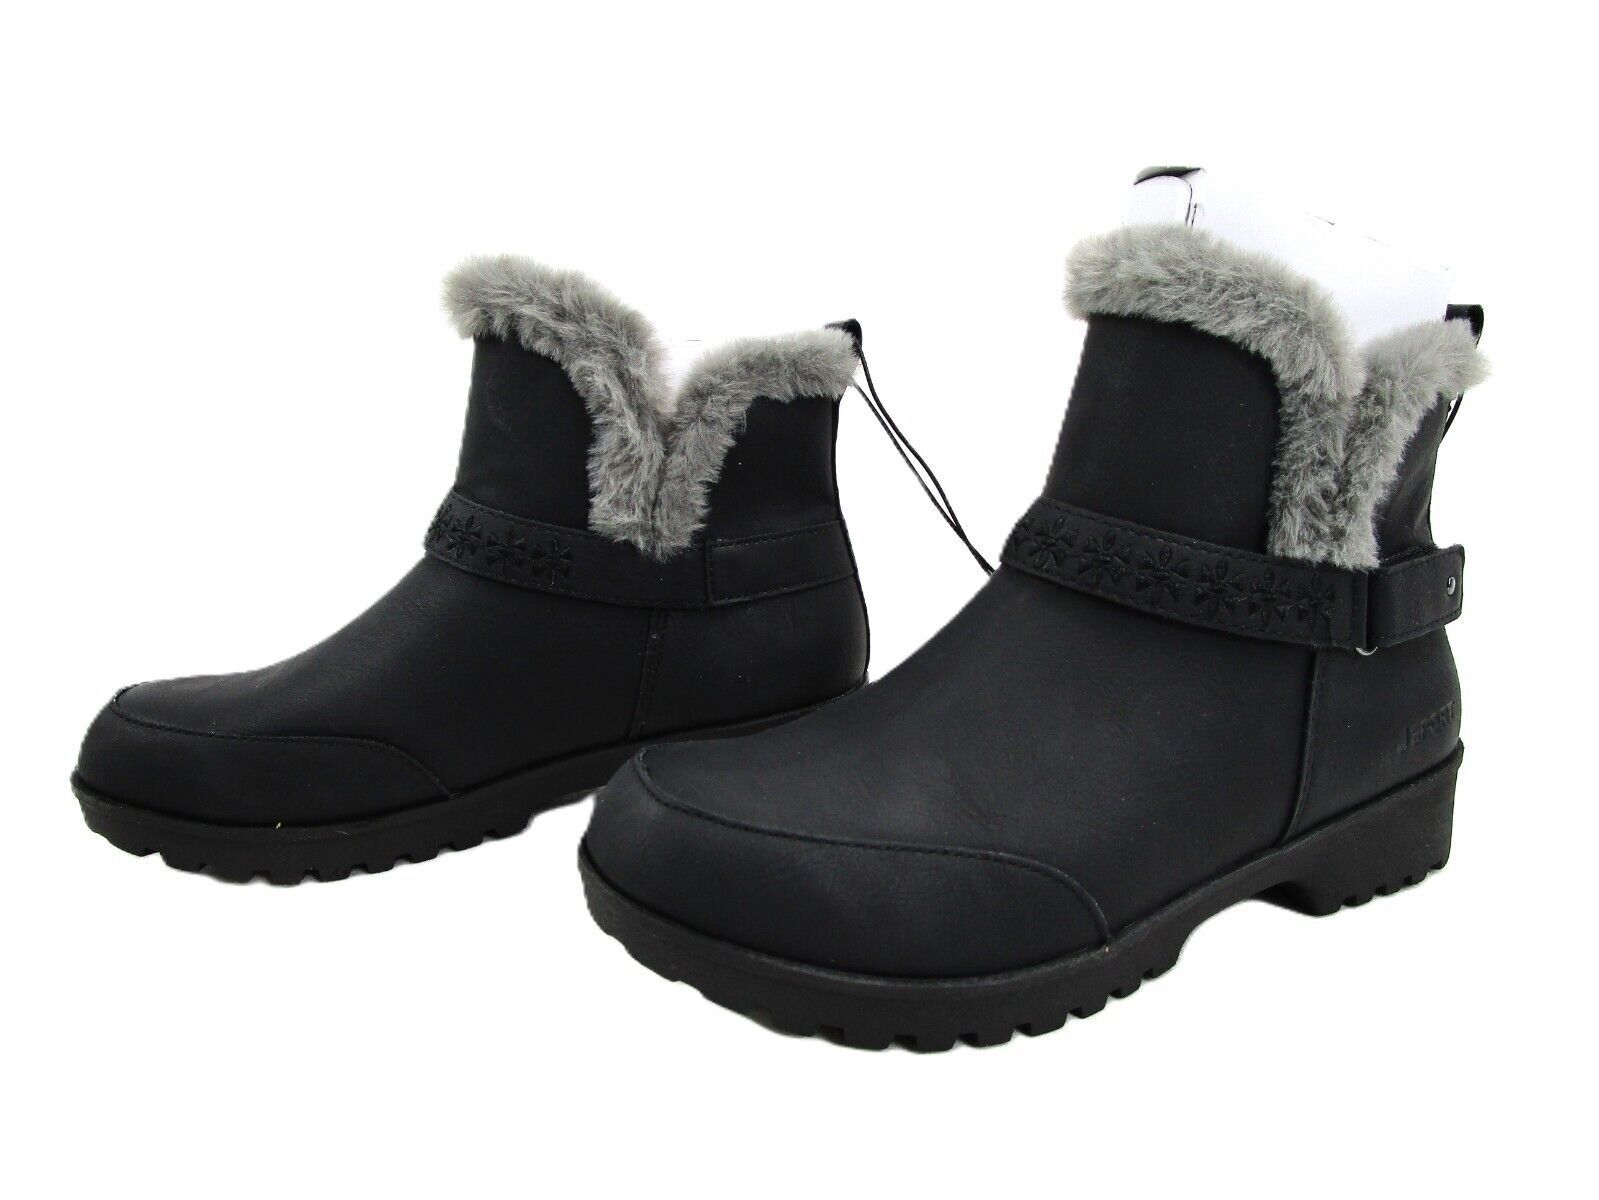 Primary image for JSport Norway Biker Style Winter Boot, Women's Sz 6 Shoe, Faux Fur, Memory Foam